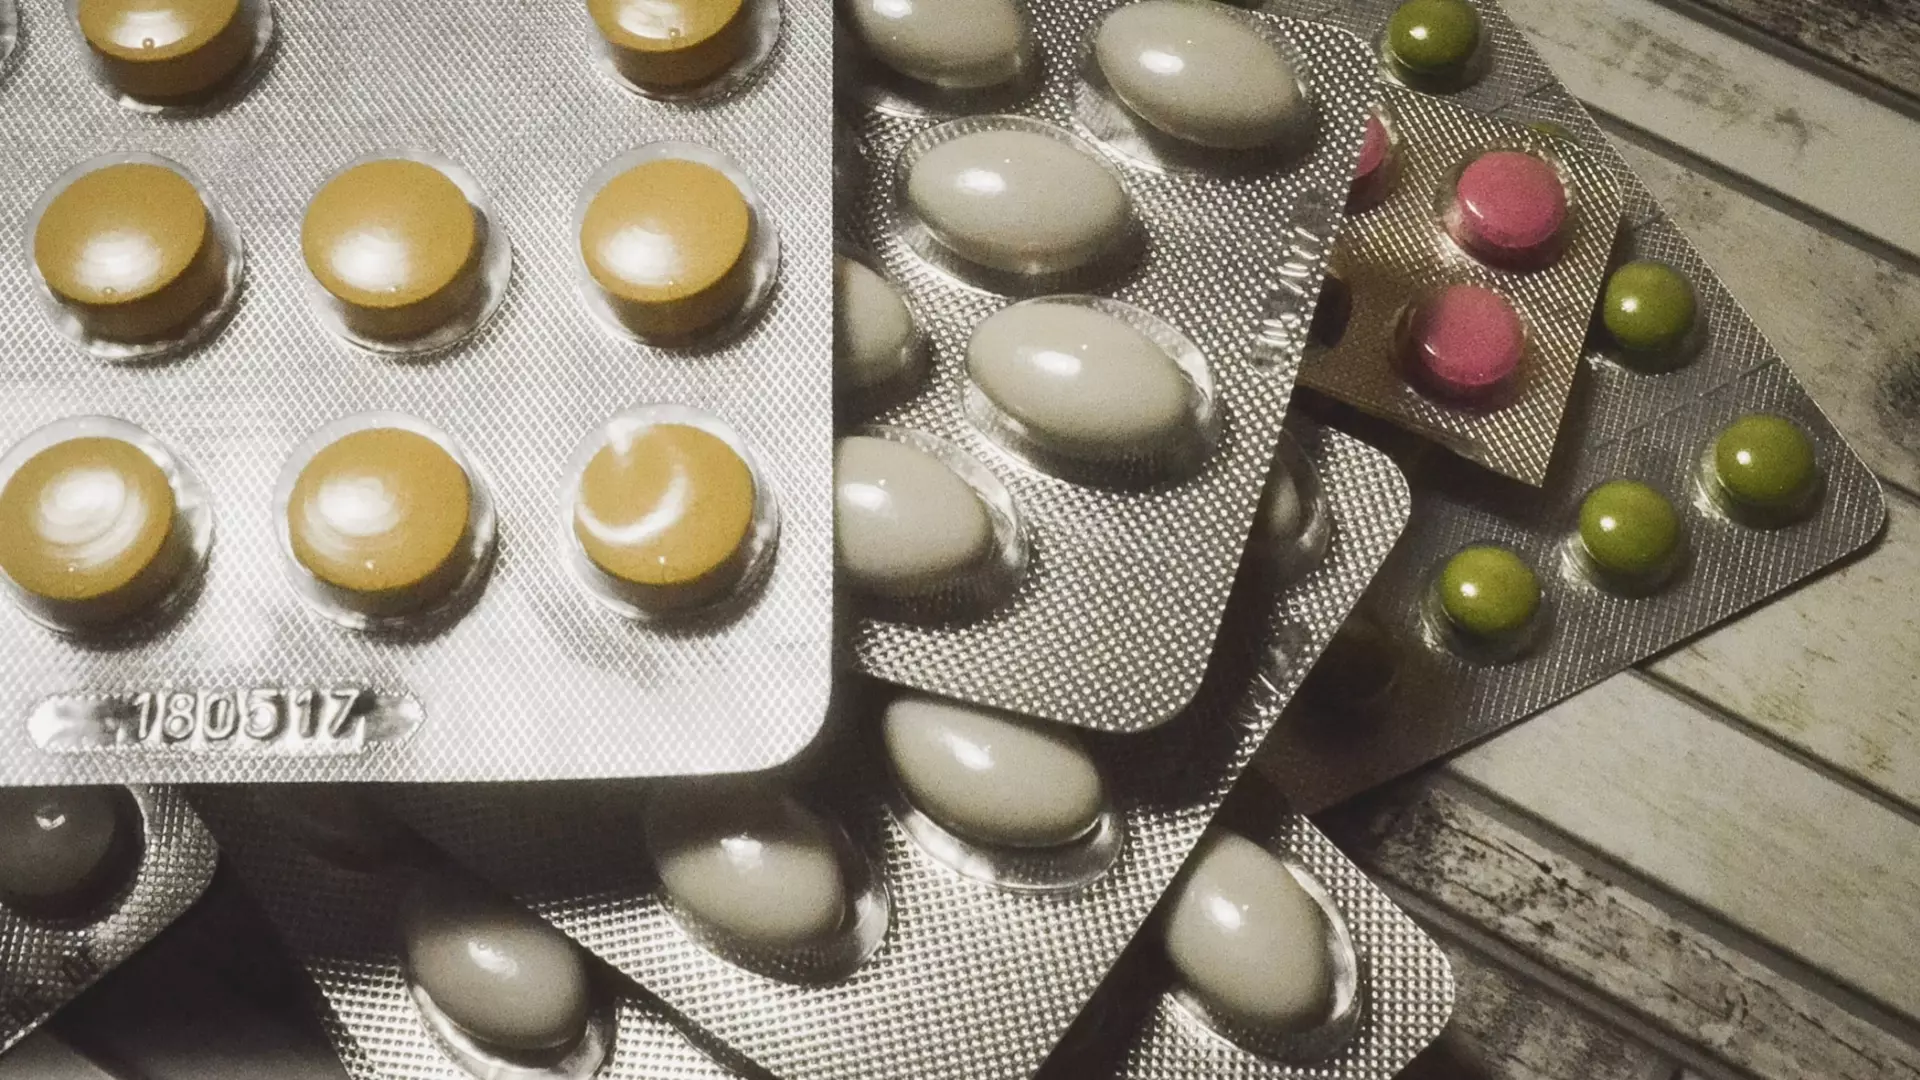 Мэрия Казани объявила о сборе ненужных лекарств для их утилизации